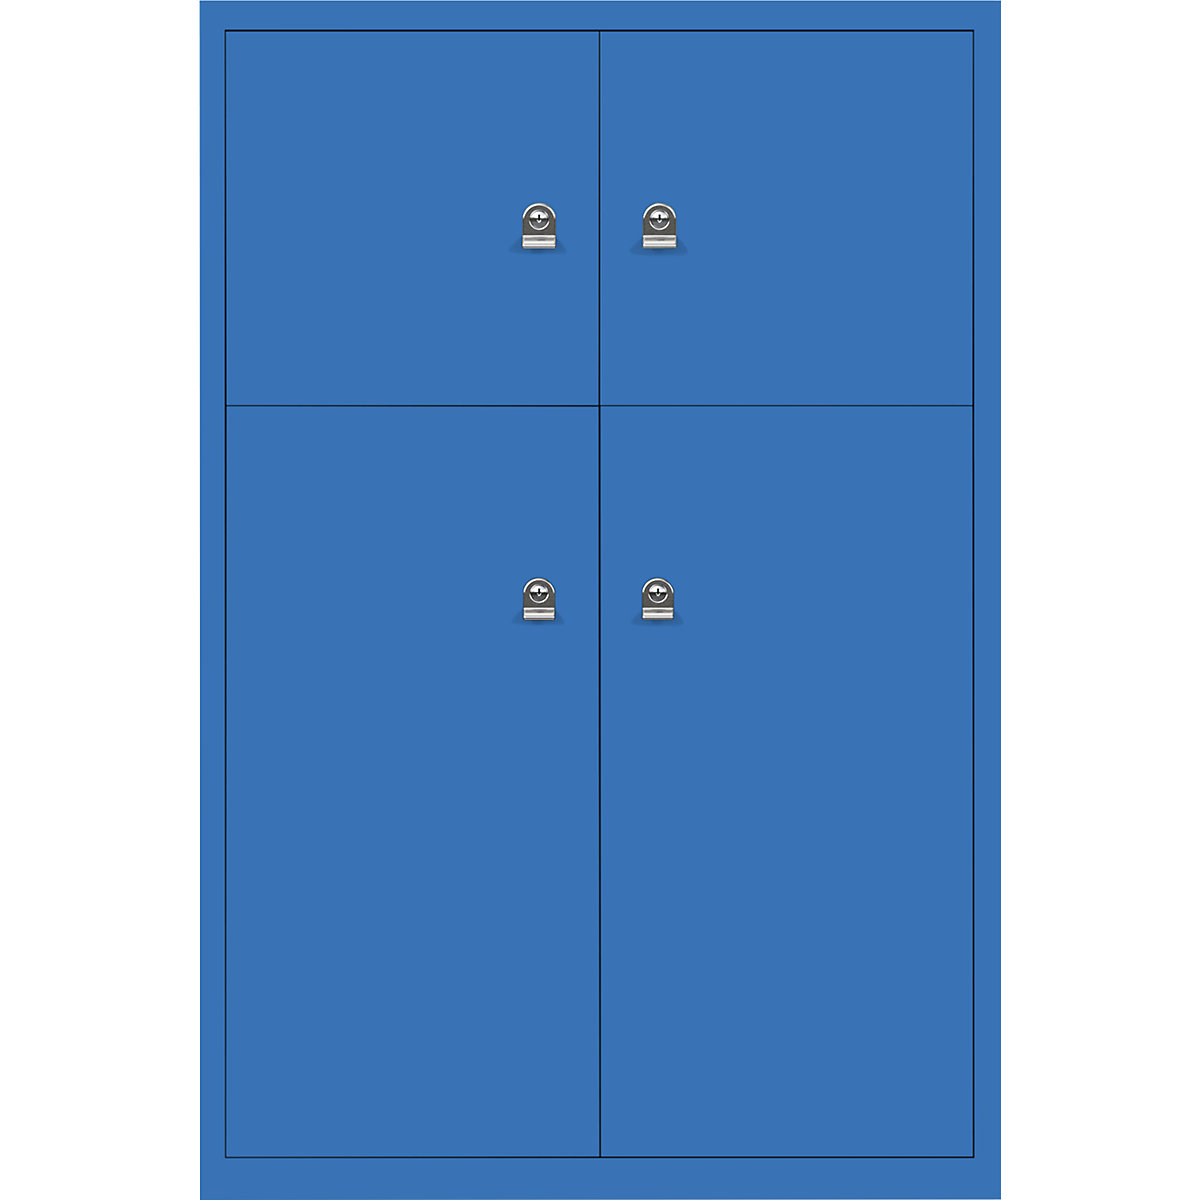 Ormar LateralFile™ Lodge – BISLEY, s 4 pretinca sa zaključavanjem, visina 2 x 375 mm, 2 x 755 mm, u plavoj boji-1